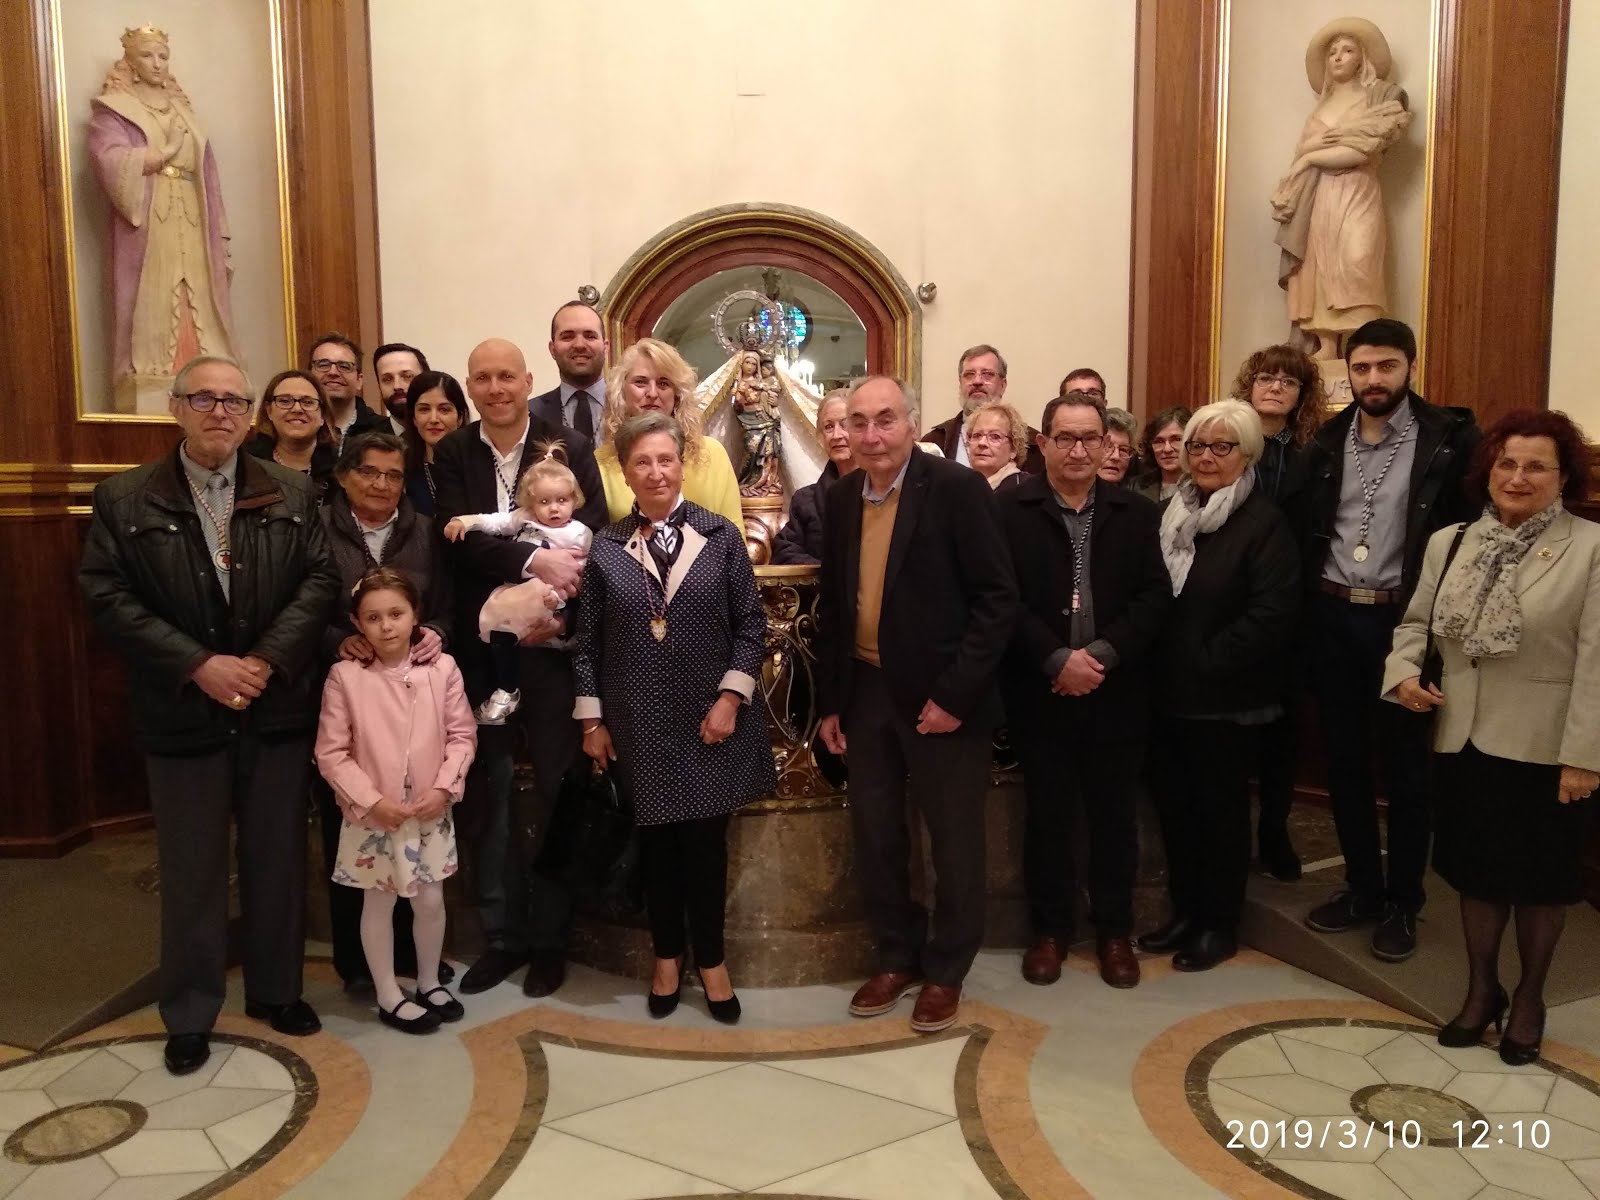 Peregrinació anual de la Confraria de Sant Josep i Sant Juame (Sant Sopar) de Reus